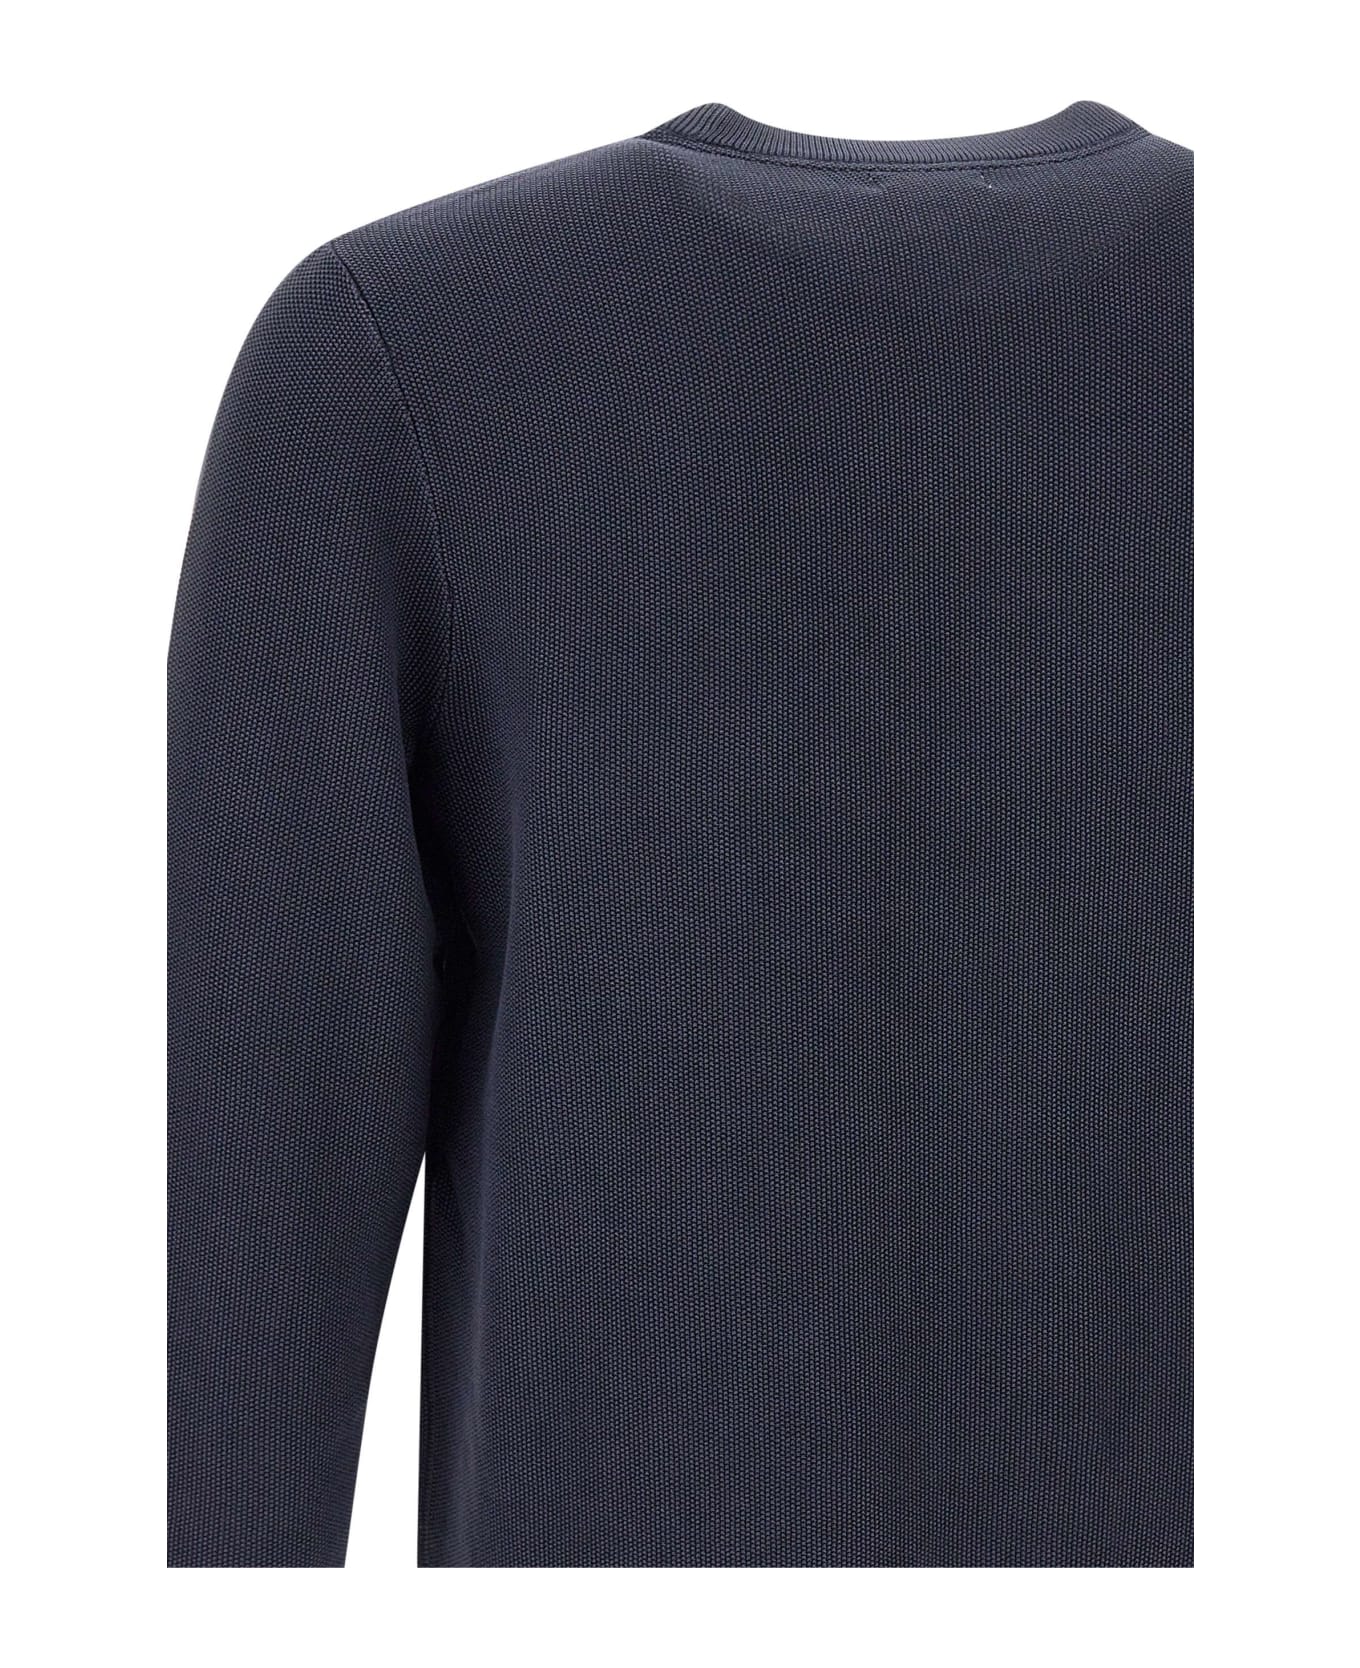 Sun 68 'round Vintage' Cotton Sweater Sun 68 - BLUE ニットウェア